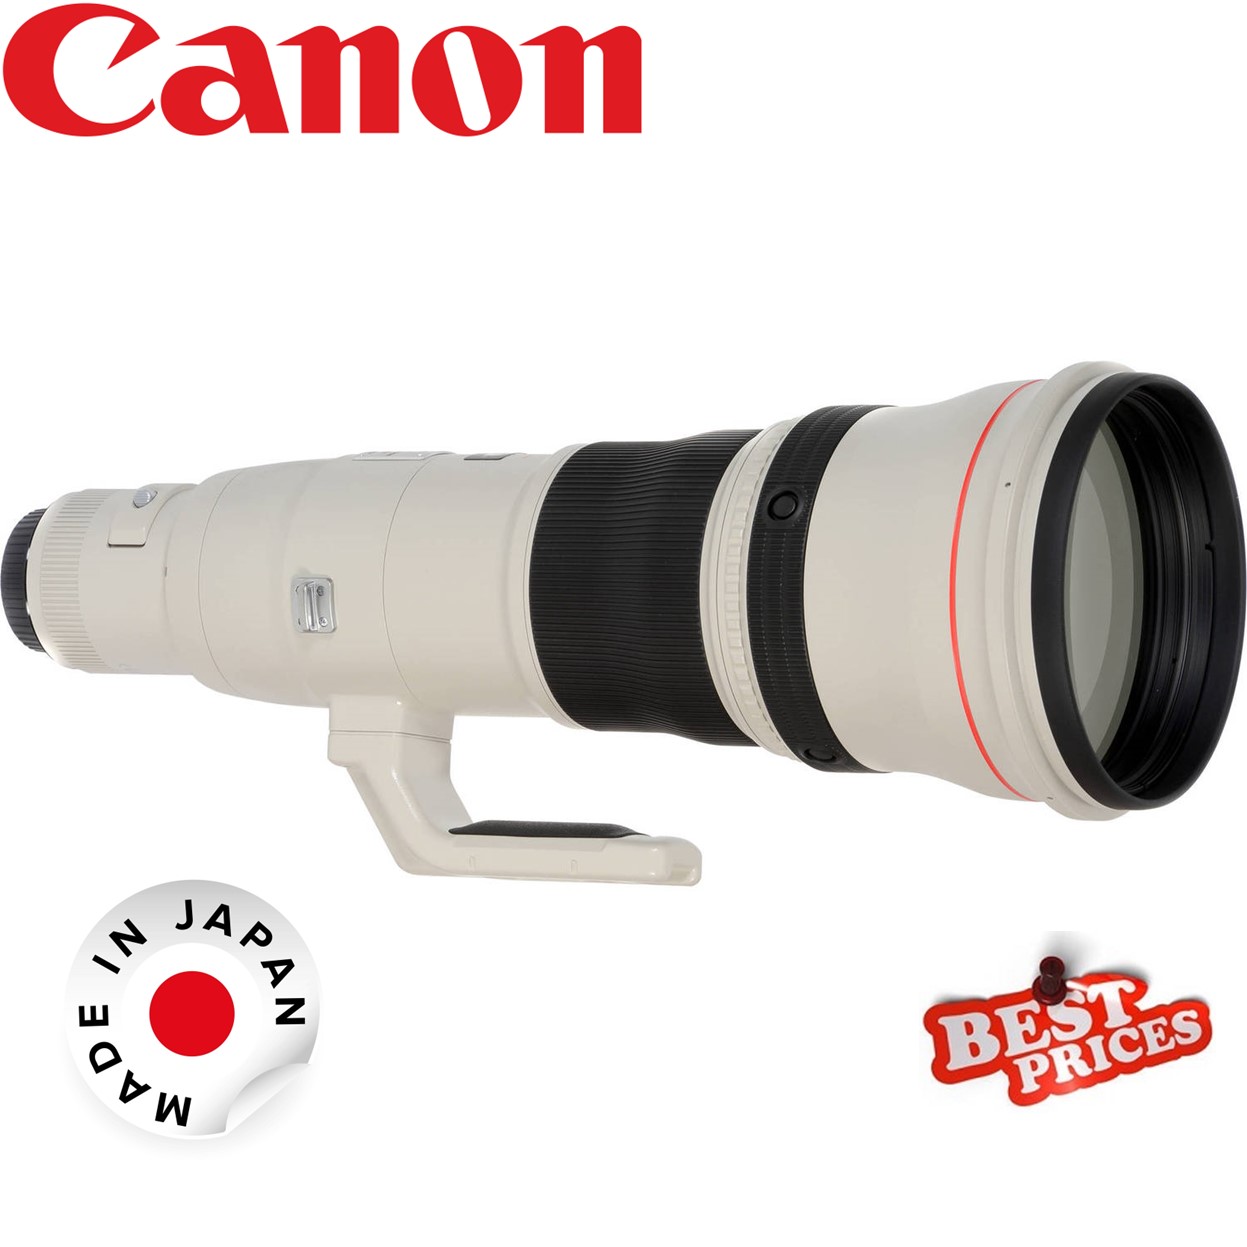 Canon EF 800mm 5.6L IS USM Lens